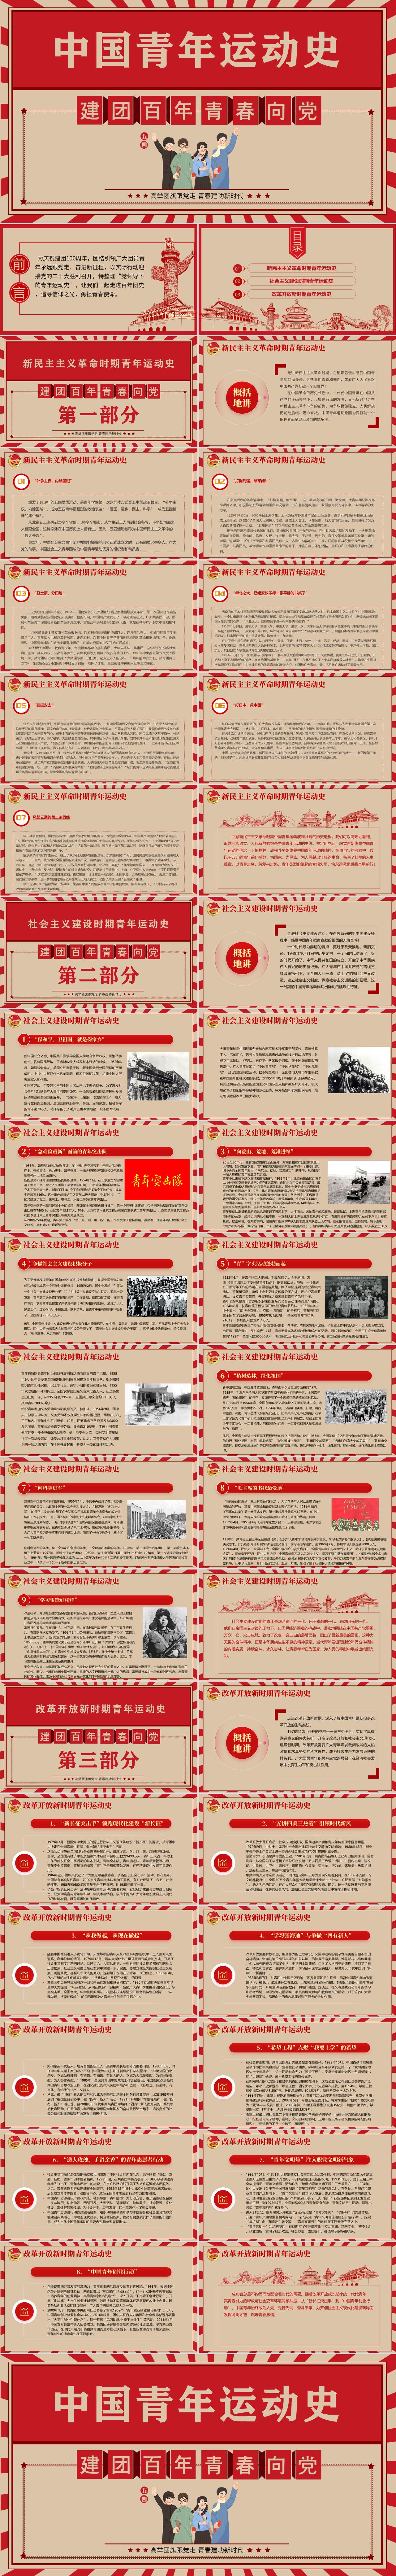 中国青年运动史ppt红色复古风建团百年青春向党弘扬五四精神挥洒热血